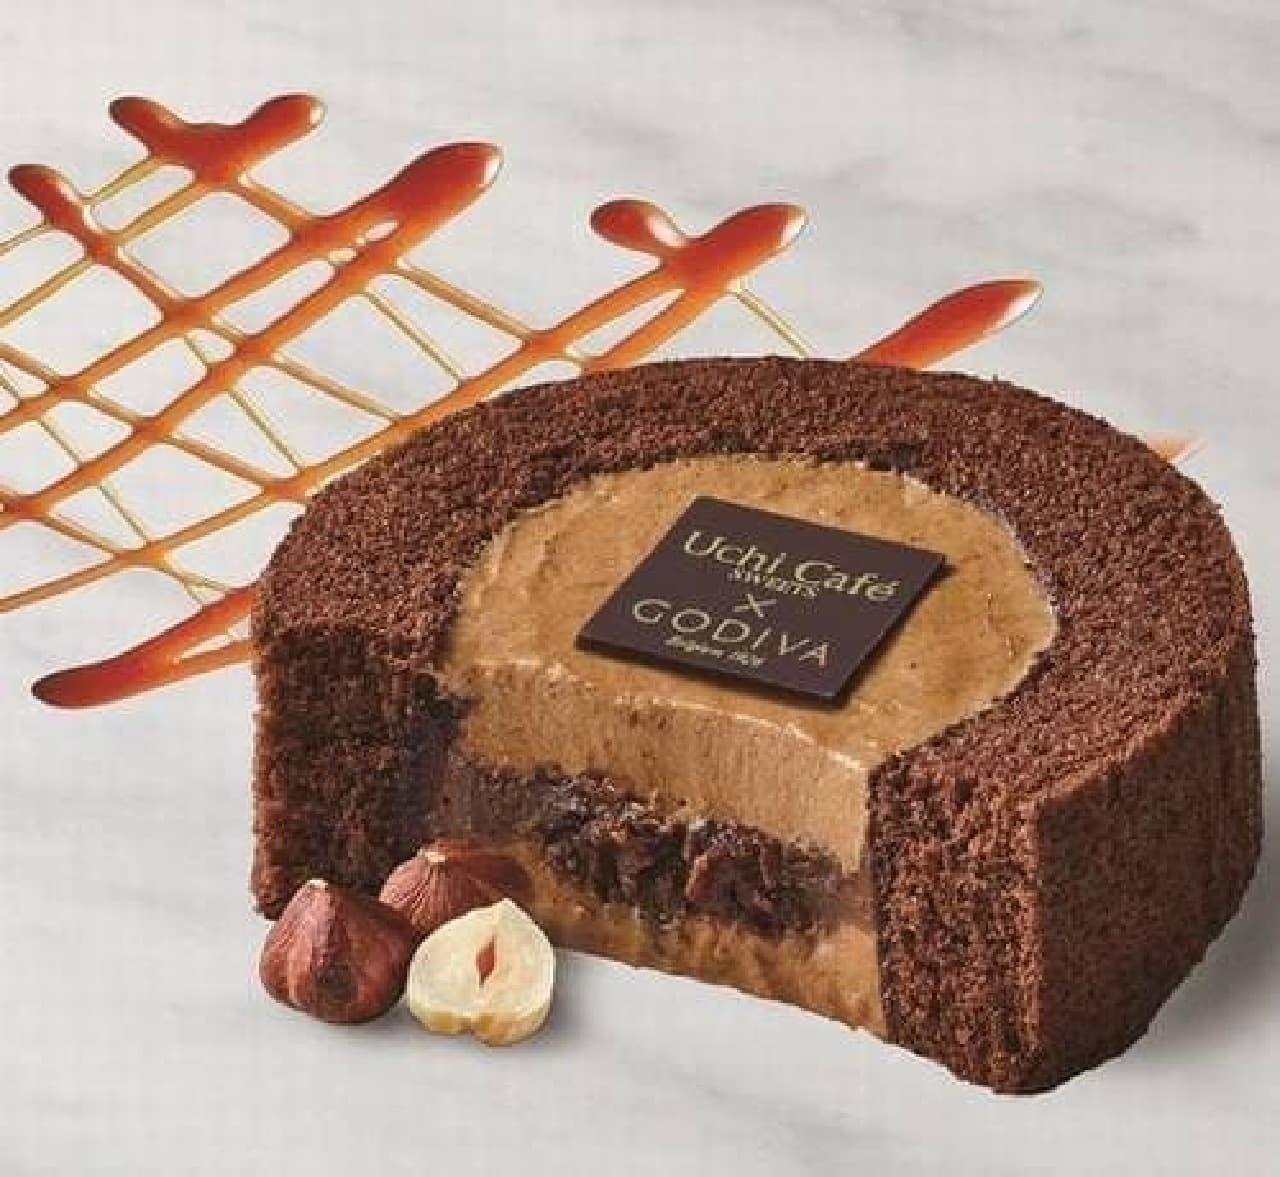 Lawson "Uchi Cafe SWEETS x GODIVA Caramel Chocolat Roll Cake"